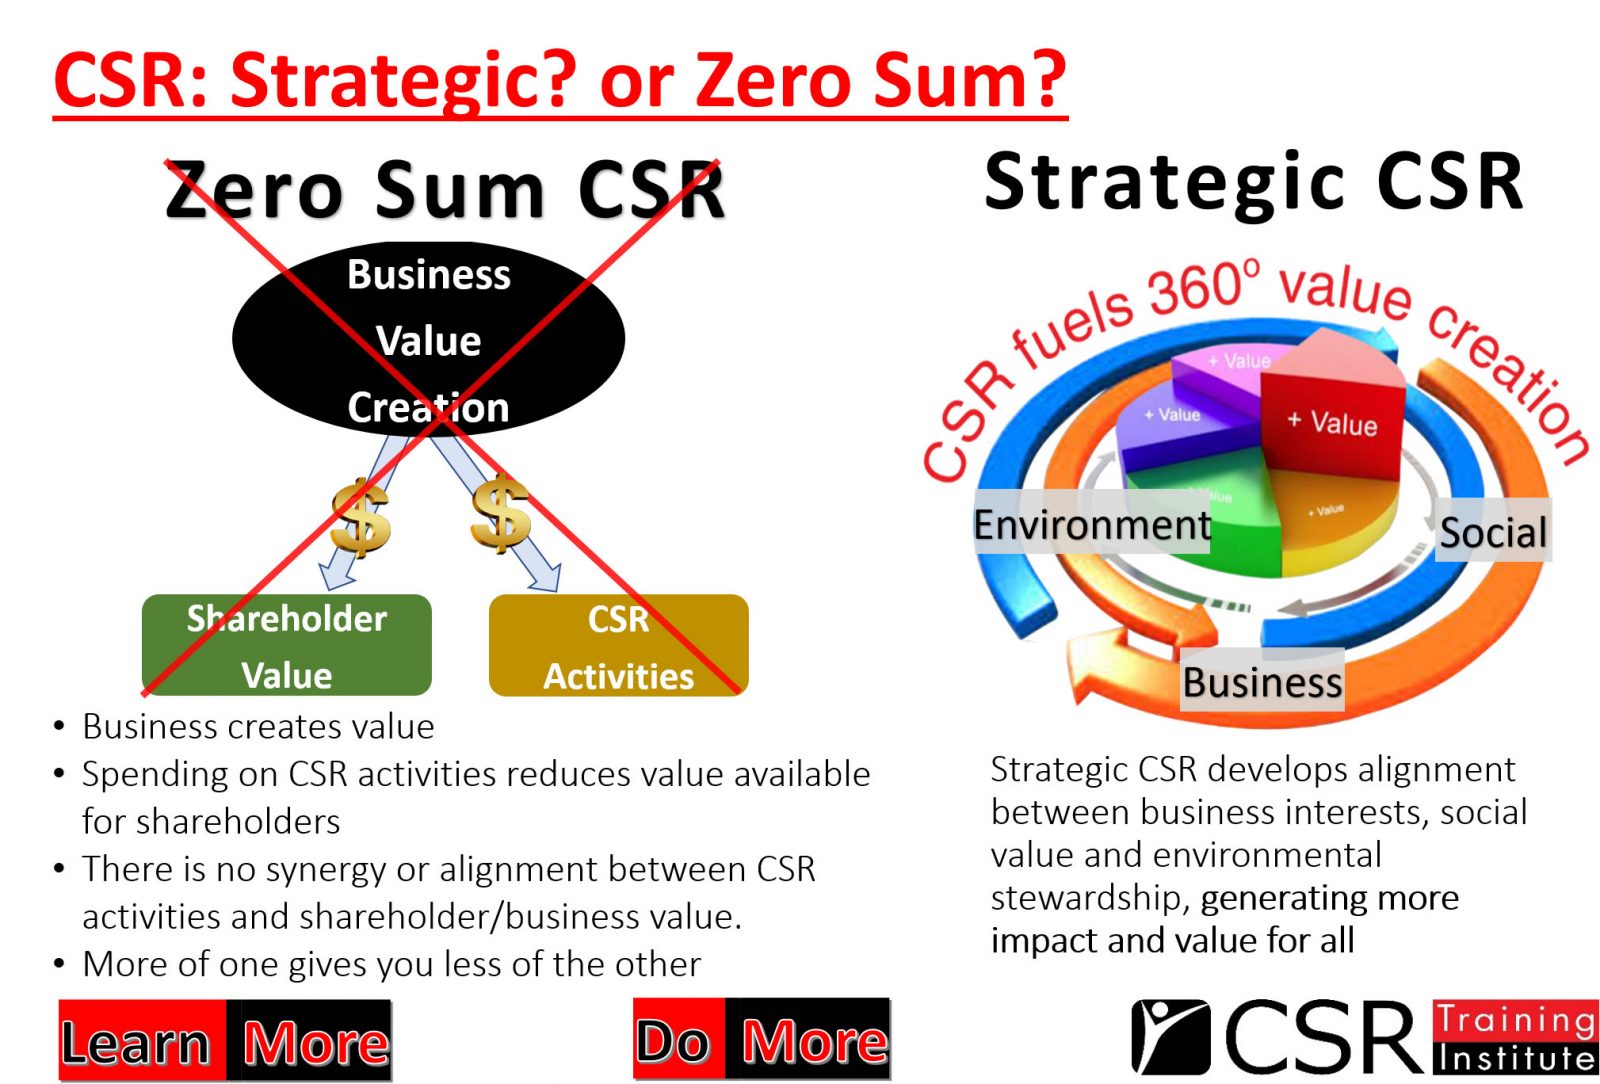 CSR - strategic or zero sum?